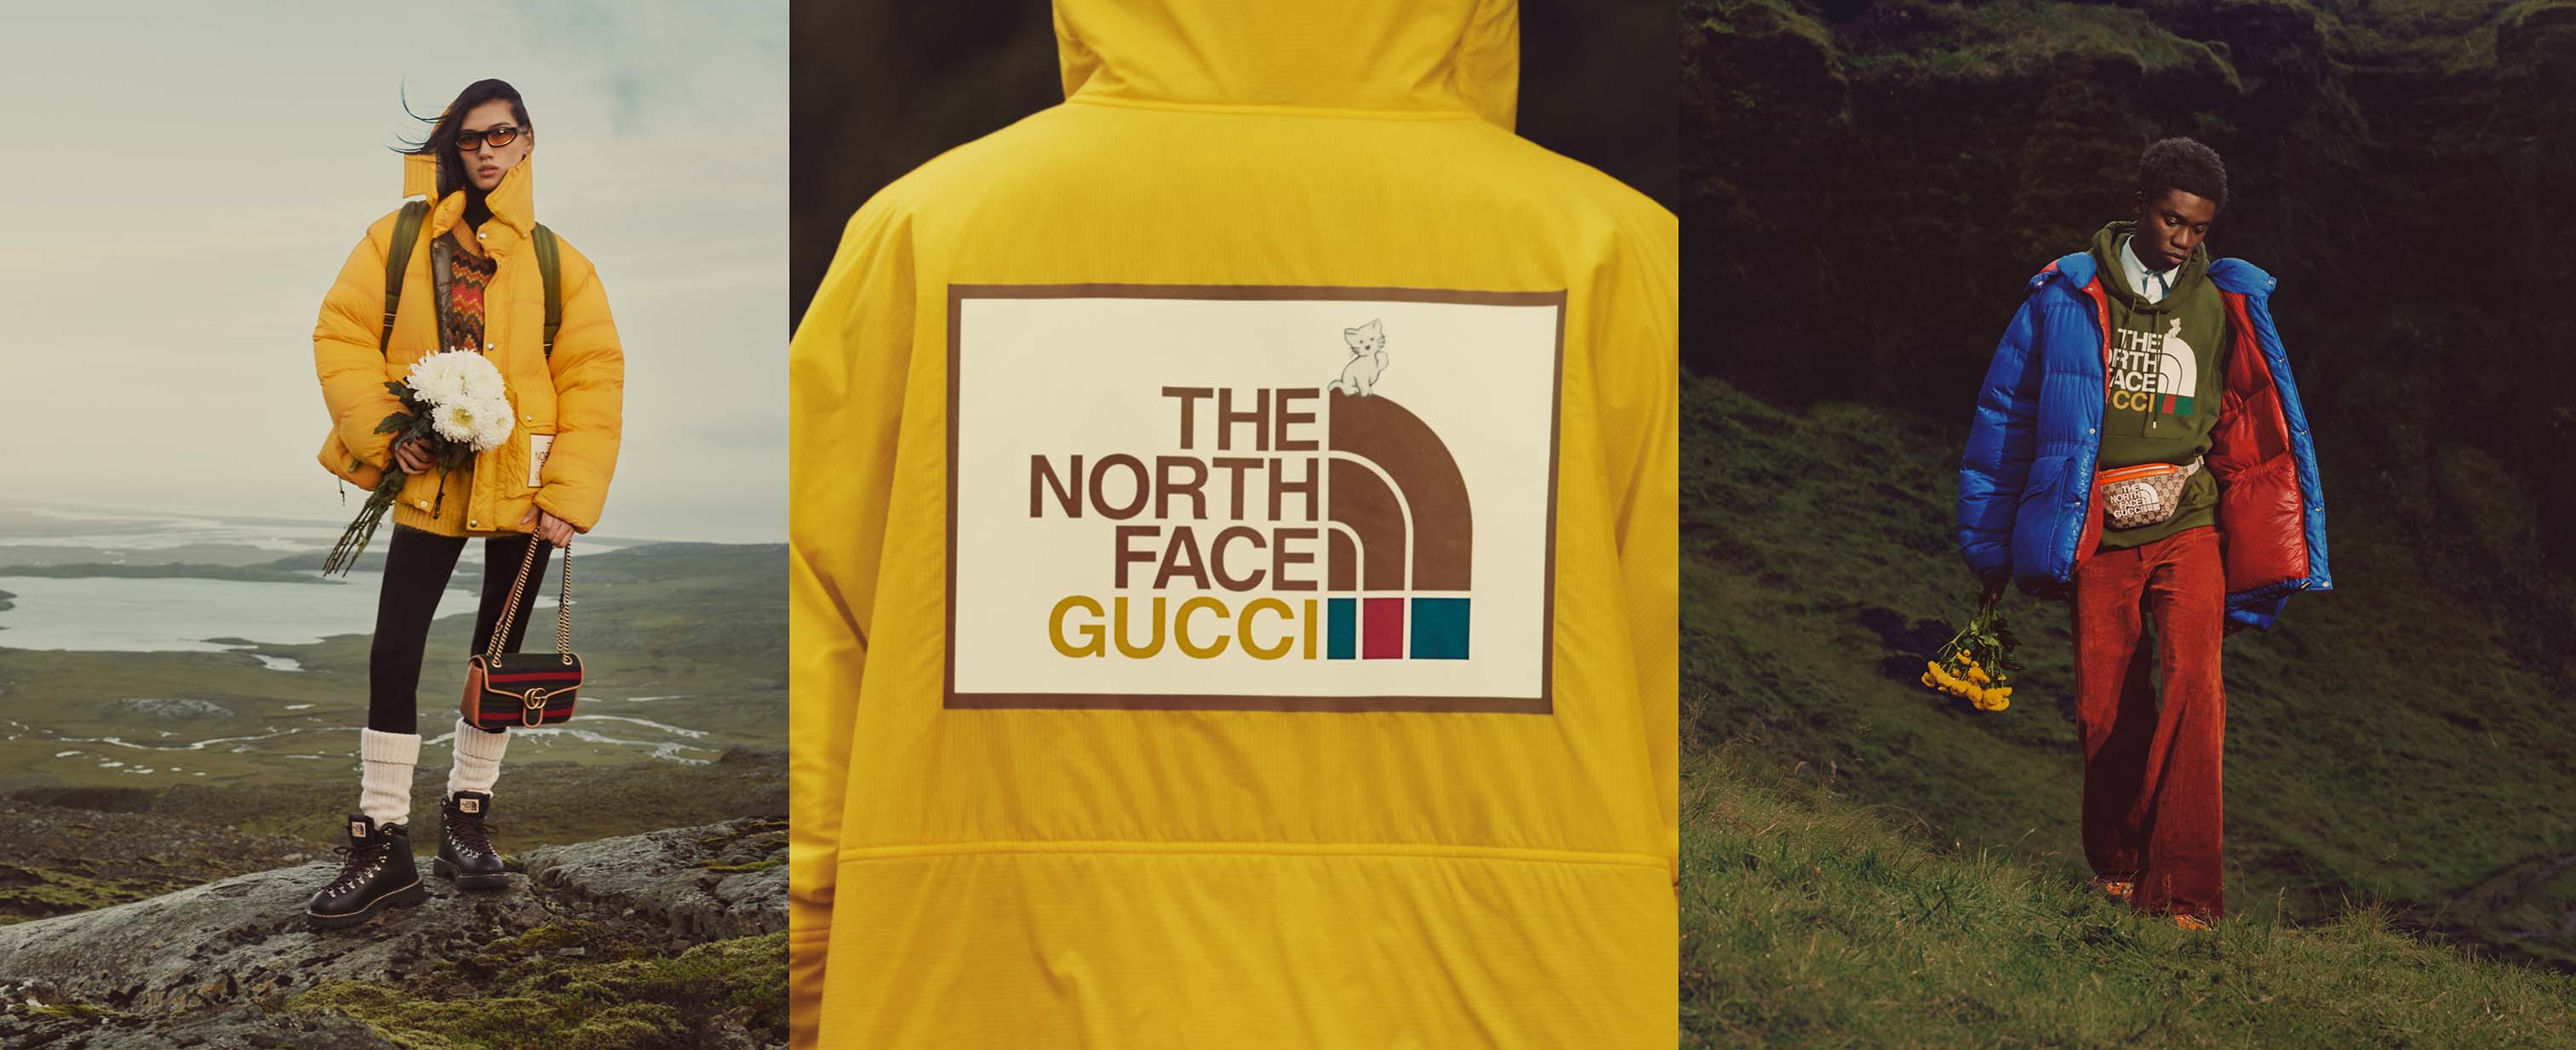 Chương 2” Của Dự Án Hợp Tác Gucci X The North Face Có Gì? - Nhịp Sống Kinh  Tế Việt Nam & Thế Giới